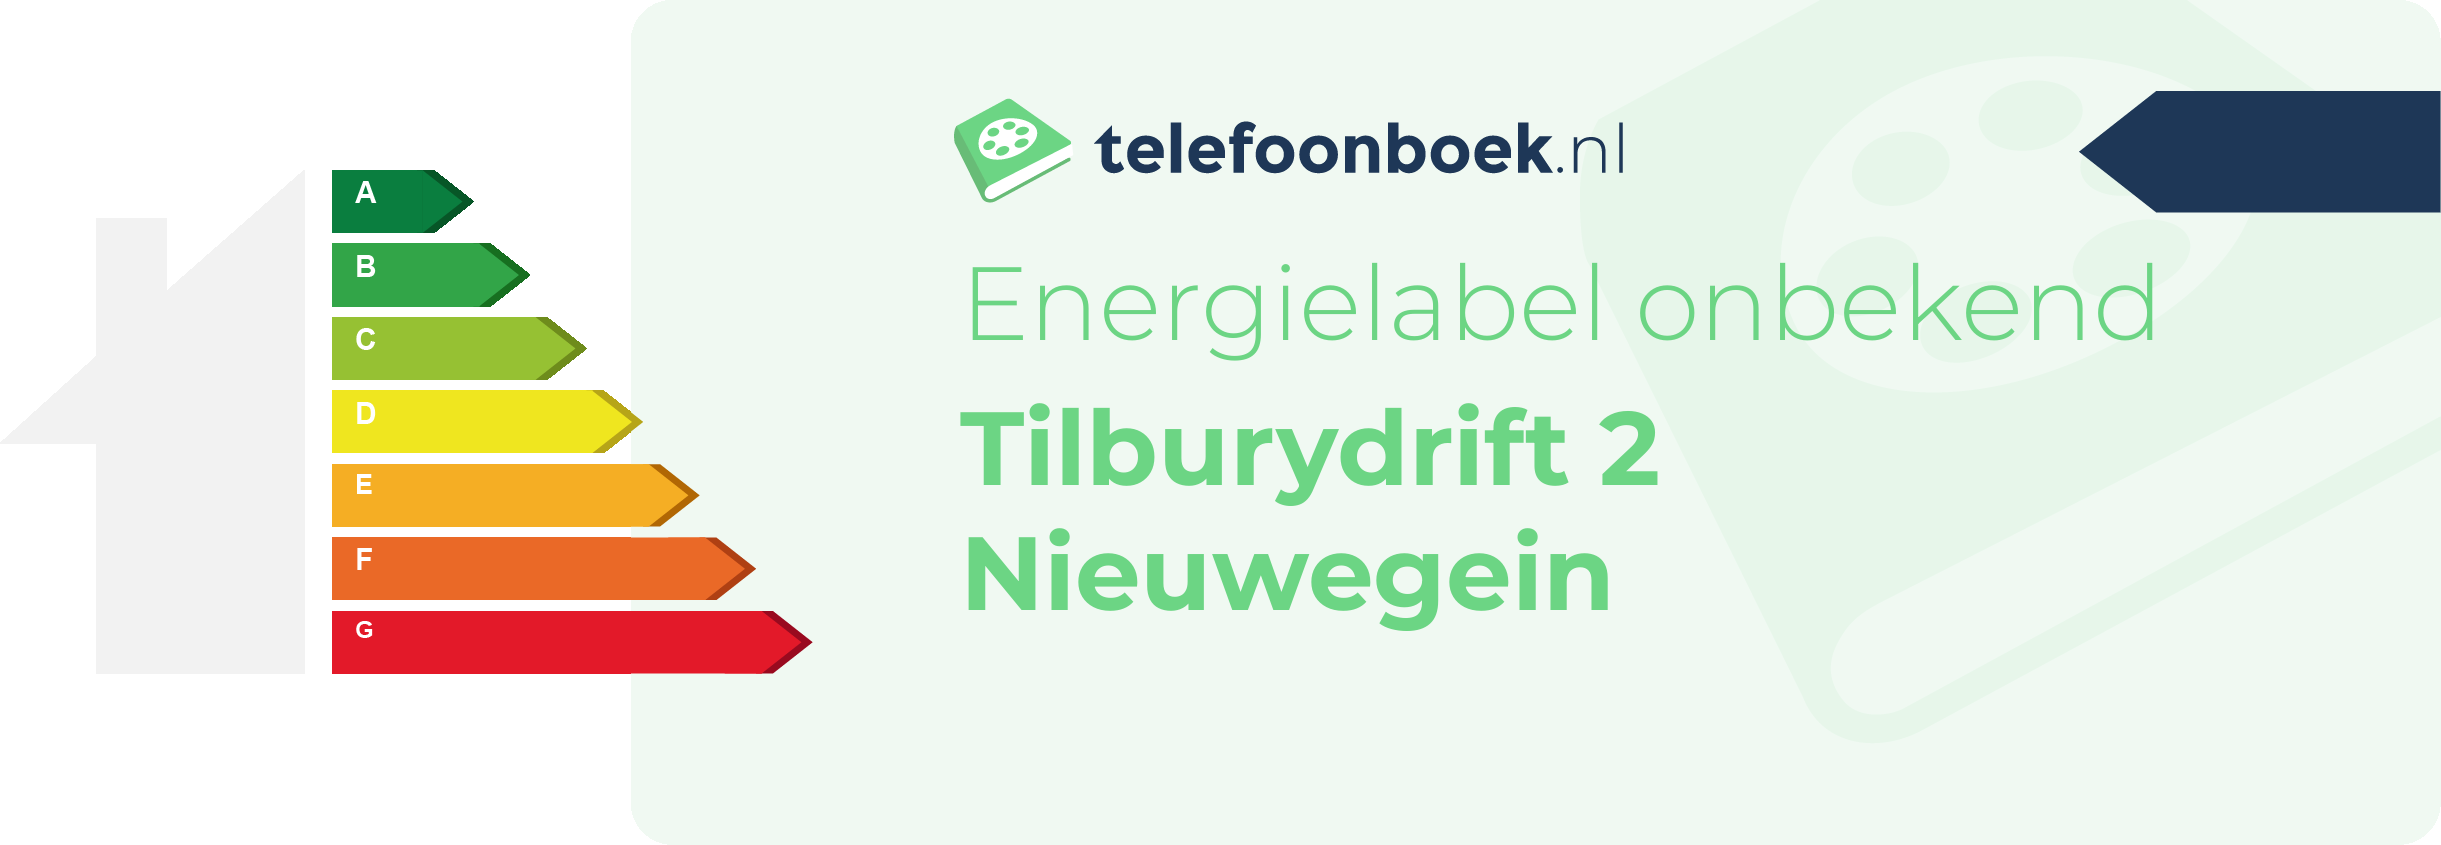 Energielabel Tilburydrift 2 Nieuwegein